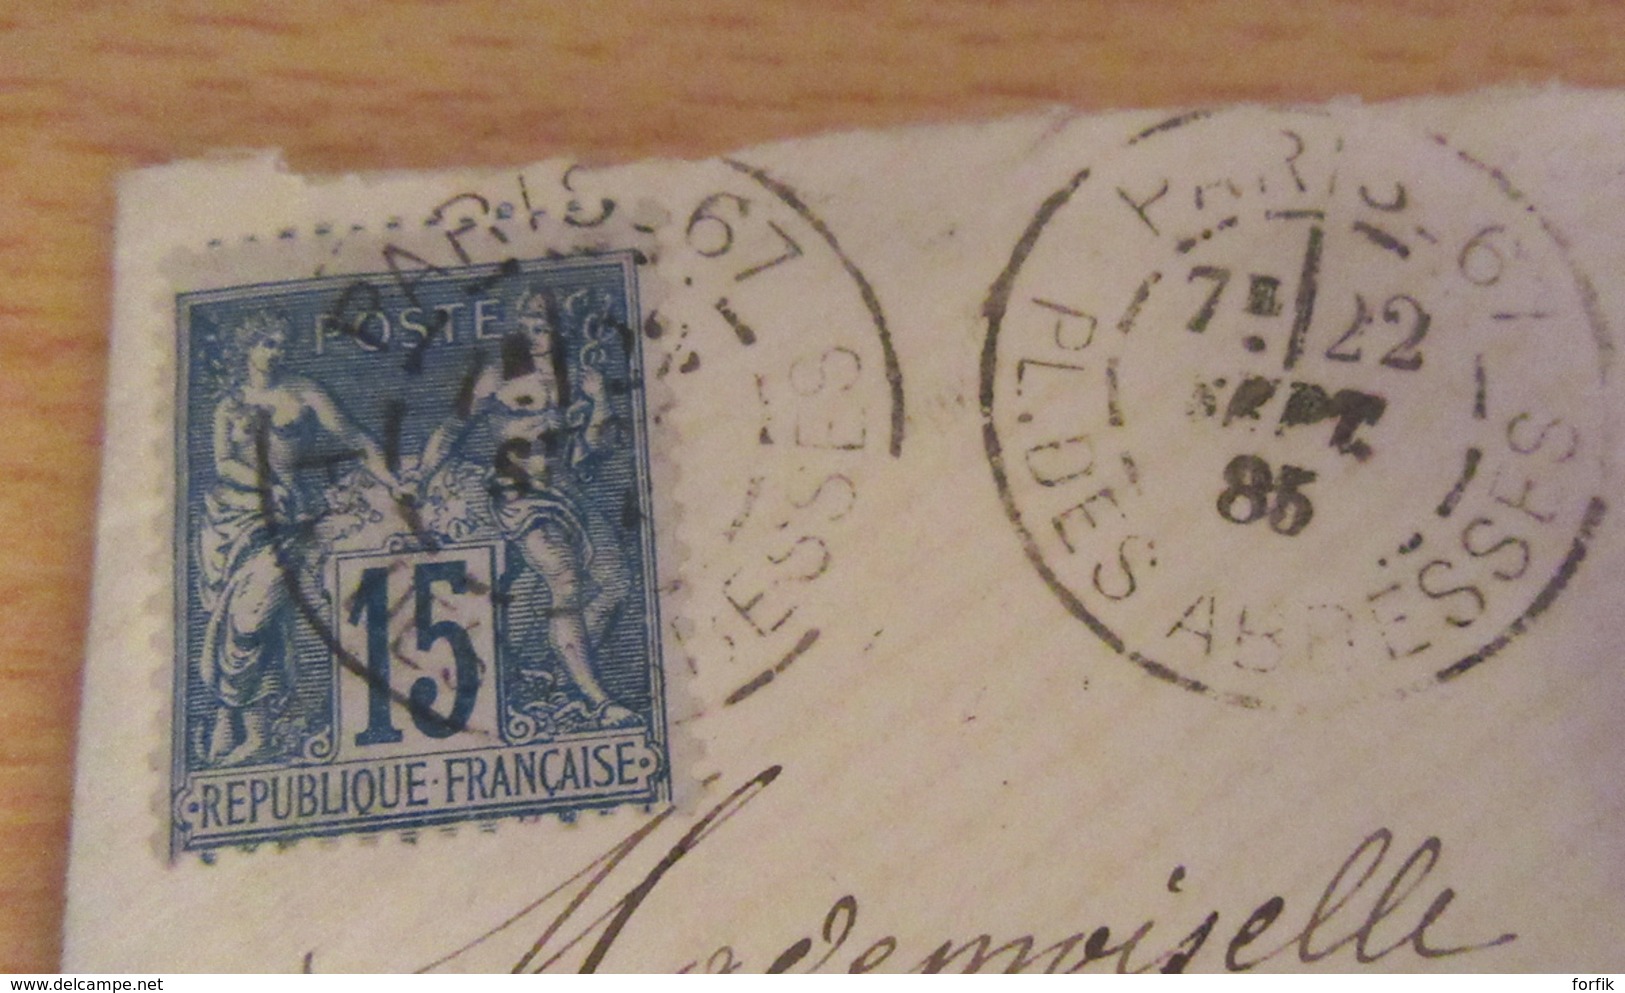 France - Joli Oblitération Daguin Sur Enveloppe Datée Du 30 Septembre 1885 Avec Lettre à étudier - 1877-1920: Période Semi Moderne